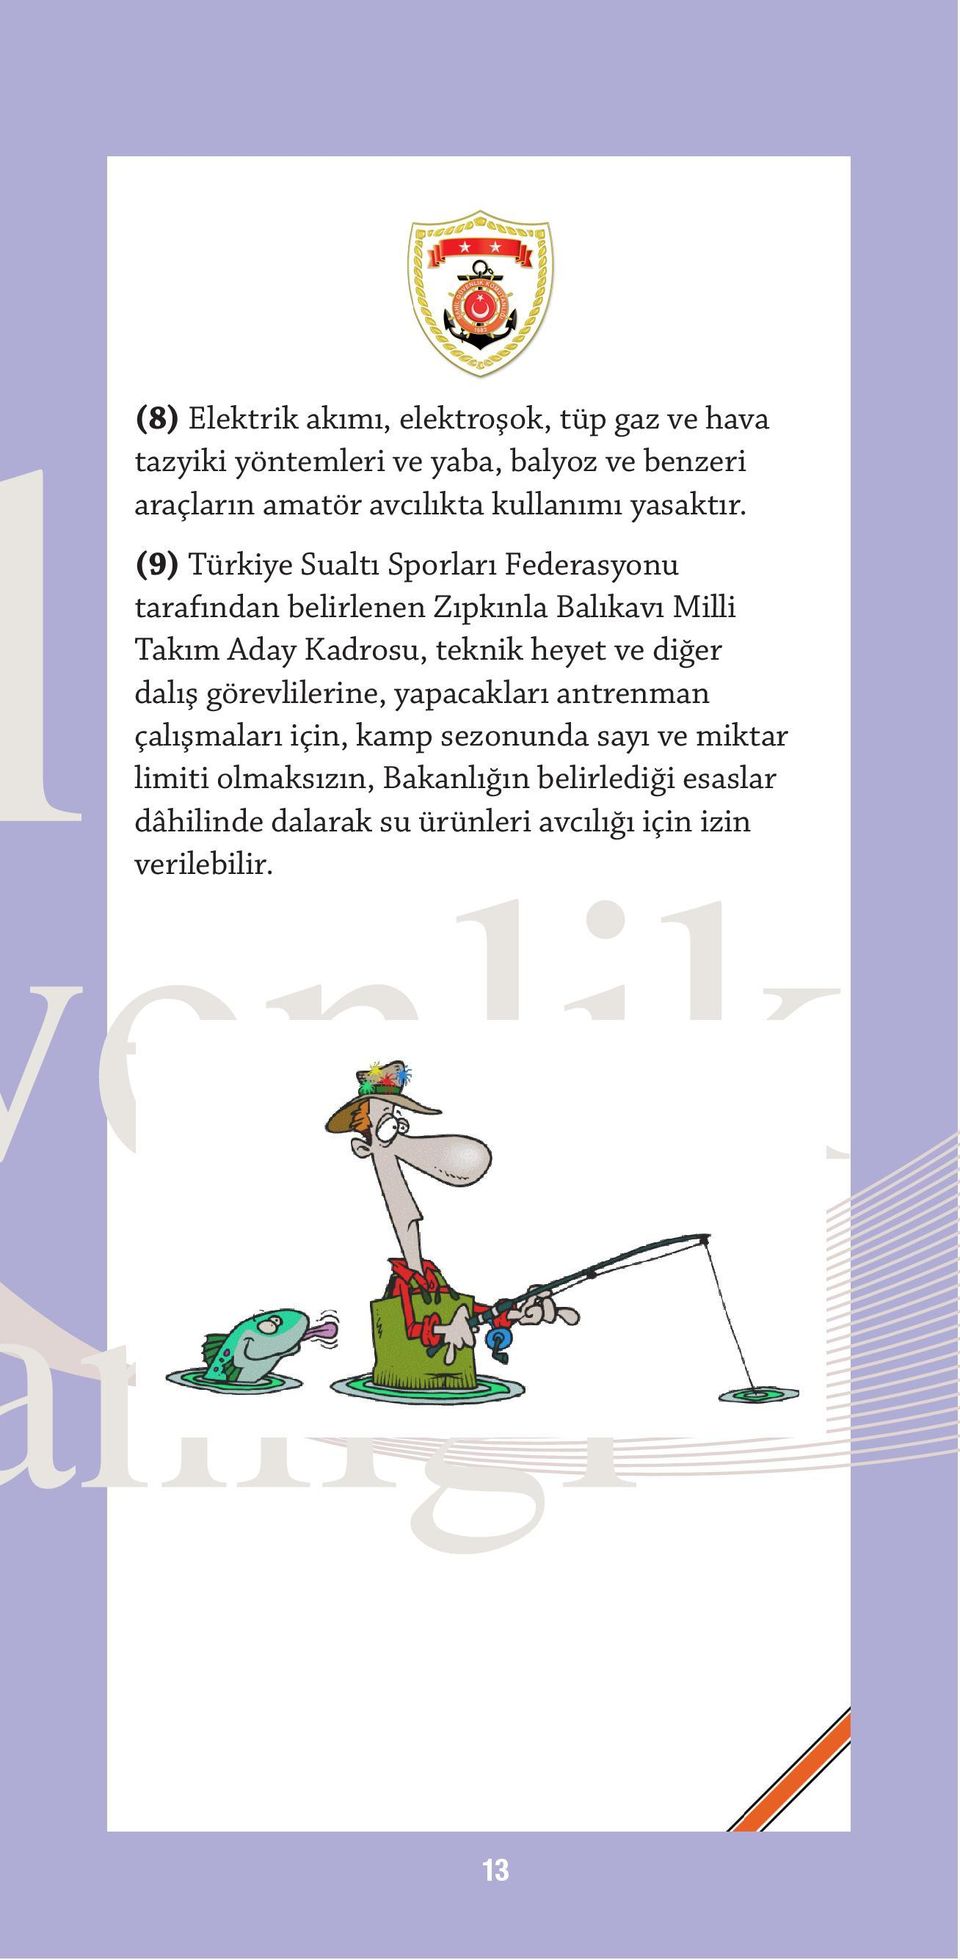 (9) Türkiye Sualtı Sporları Federasyonu tarafından belirlenen Zıpkınla Balıkavı Milli Takım Aday Kadrosu, teknik heyet